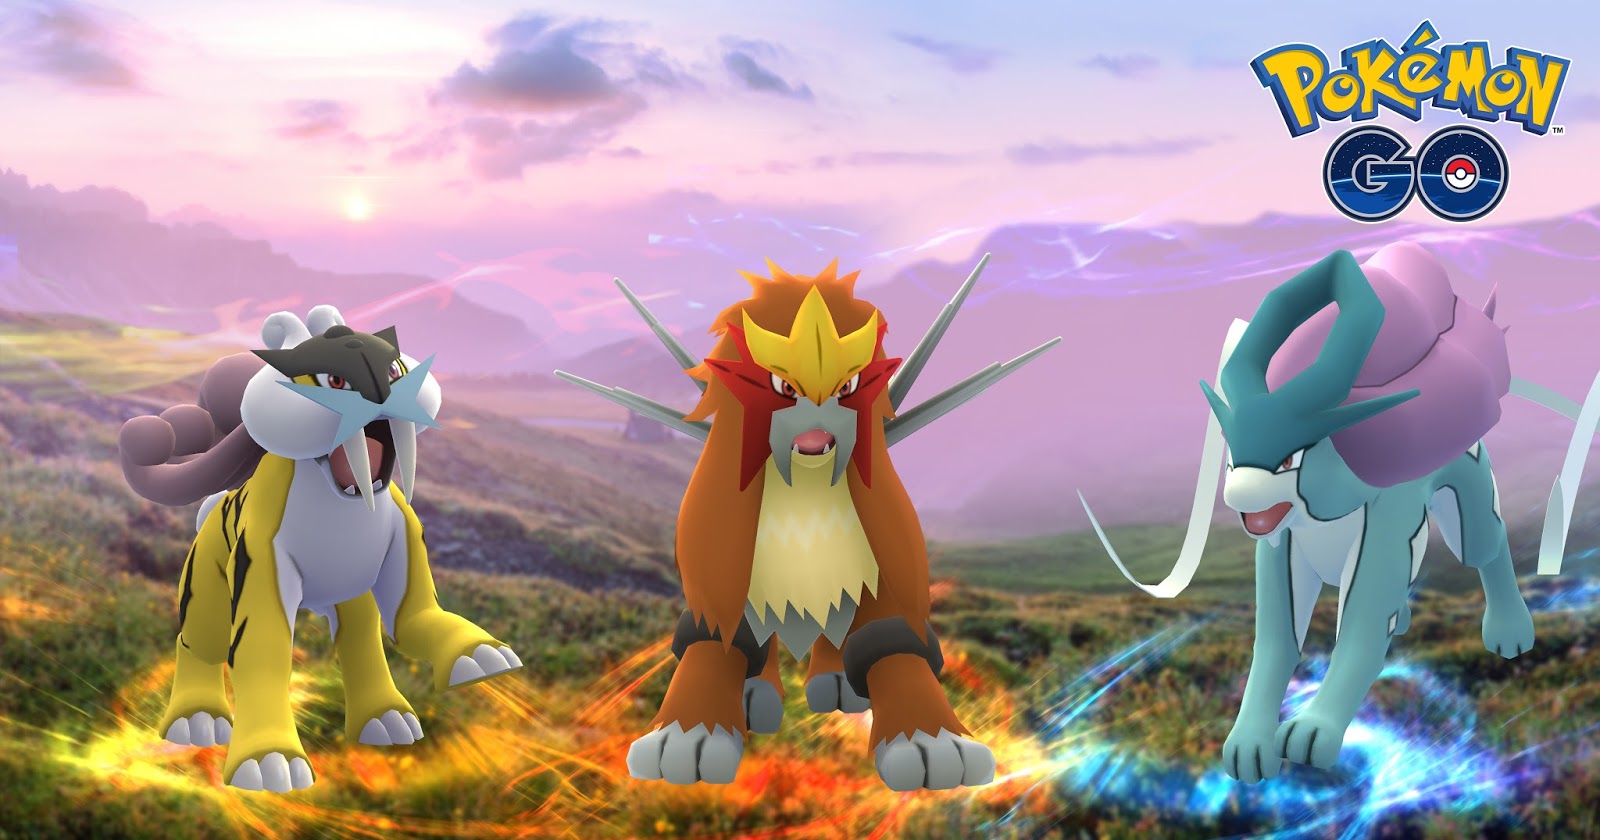 Tudo sobre Virizion: o novo chefe de reide lendário de Pokémon GO! - Liga  dos Games